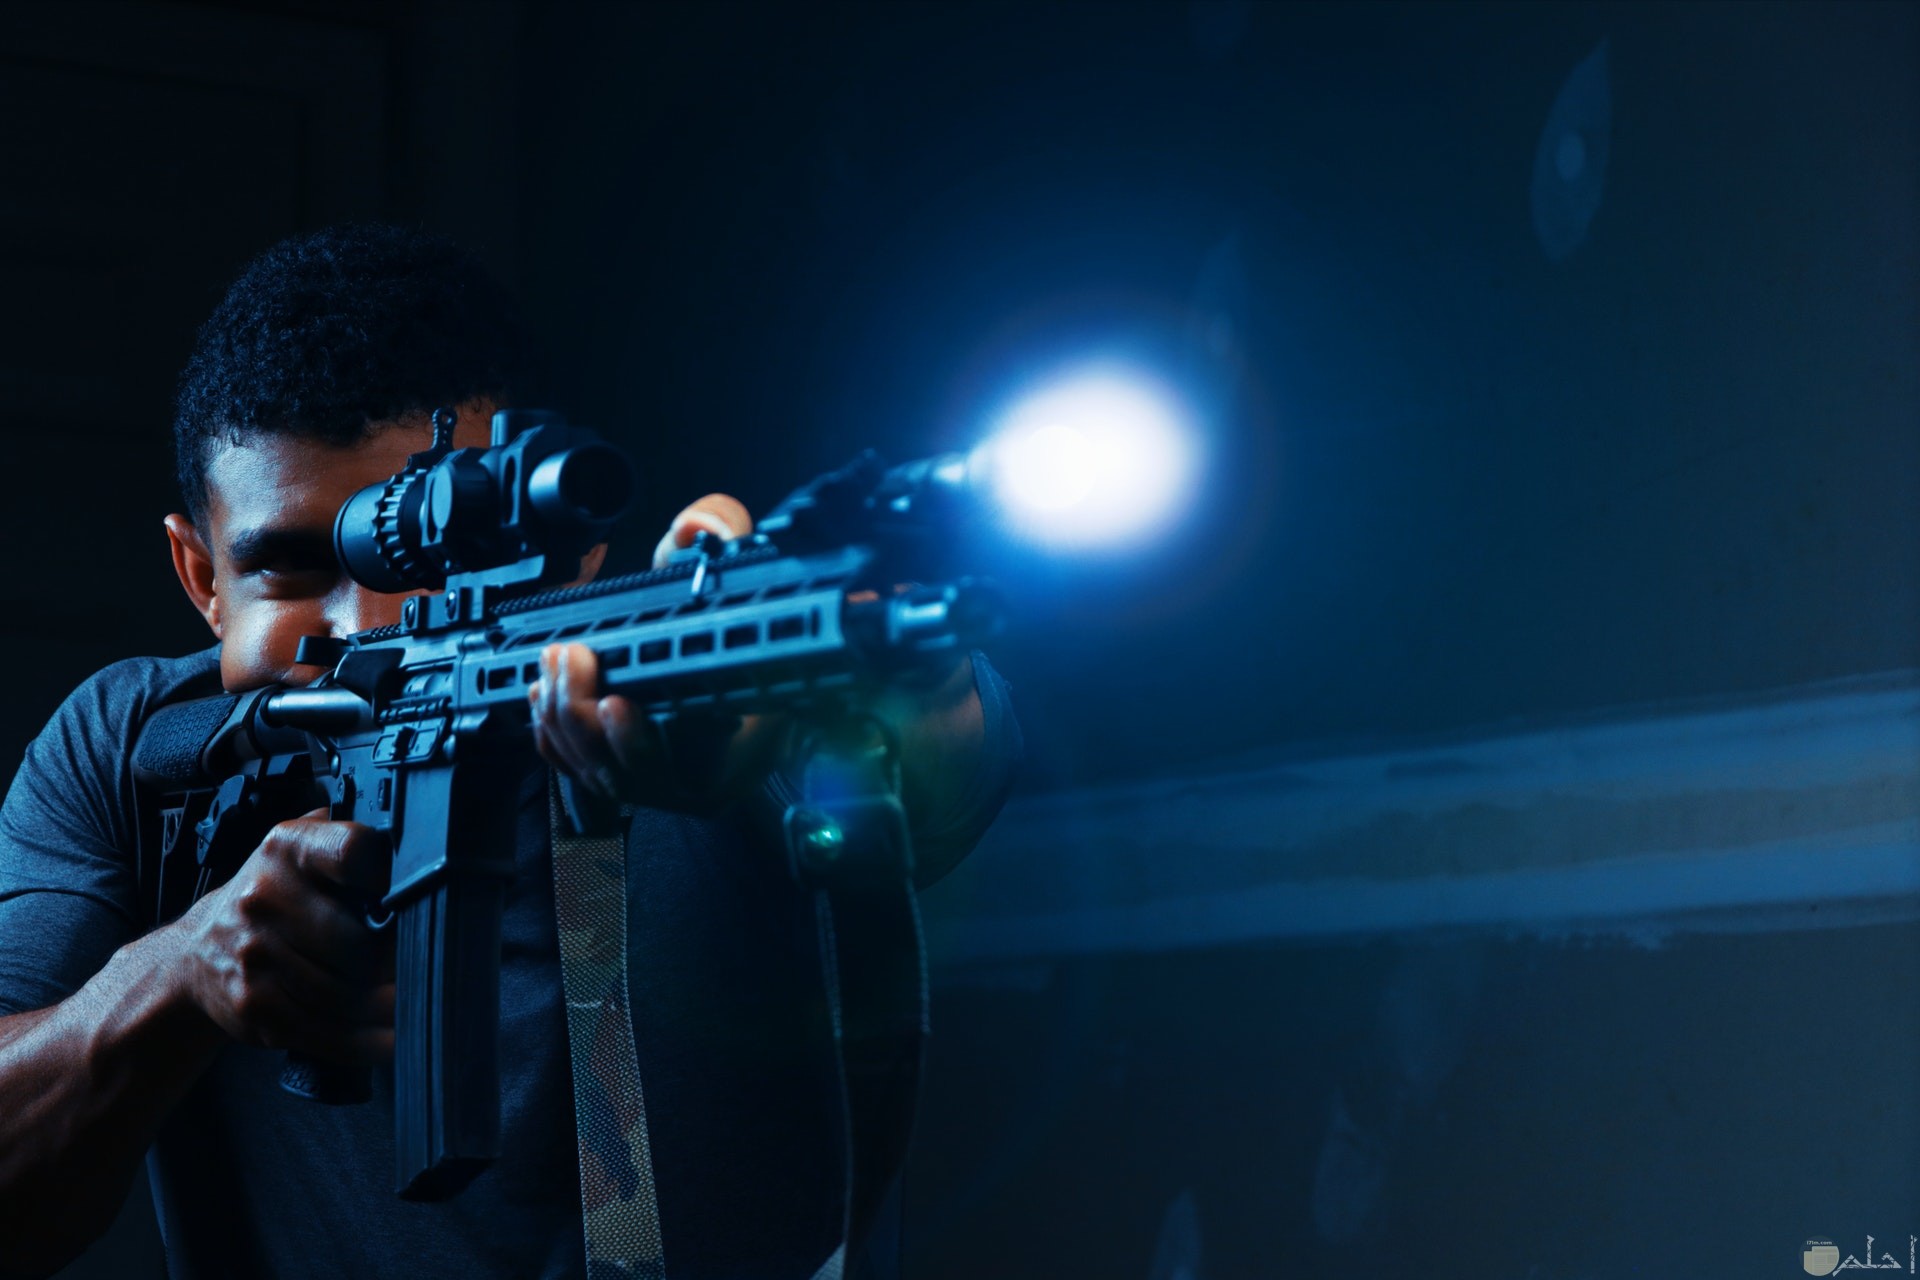 صورة أكشن مميزة لشاب يحمل سلاح في الظلام